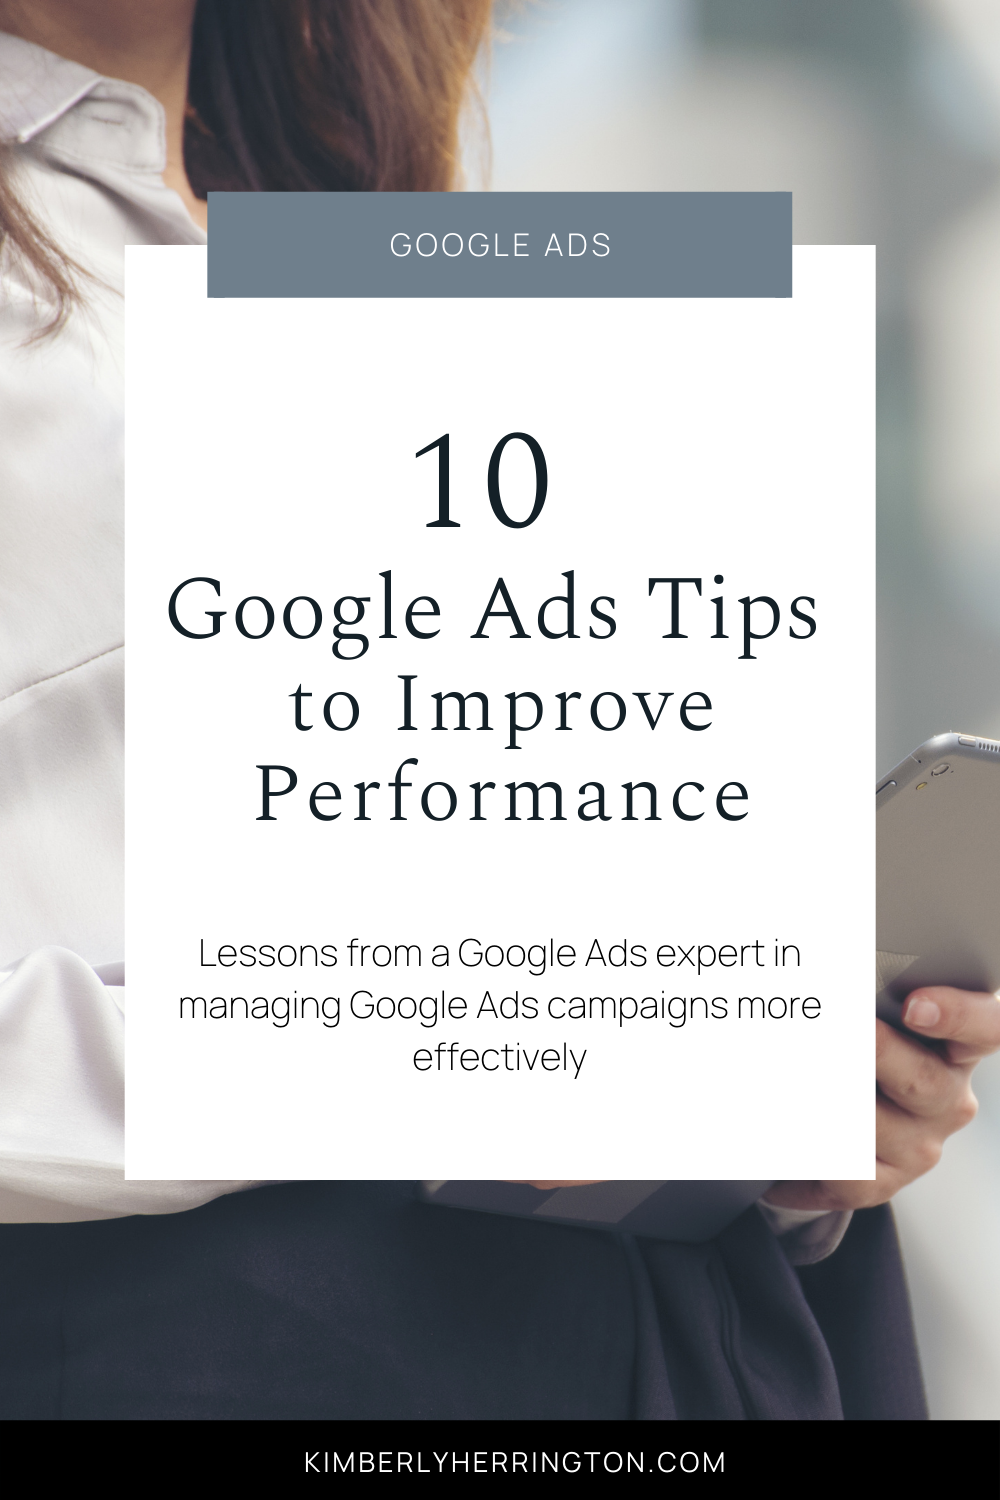 Google Ads Tips from an Expert